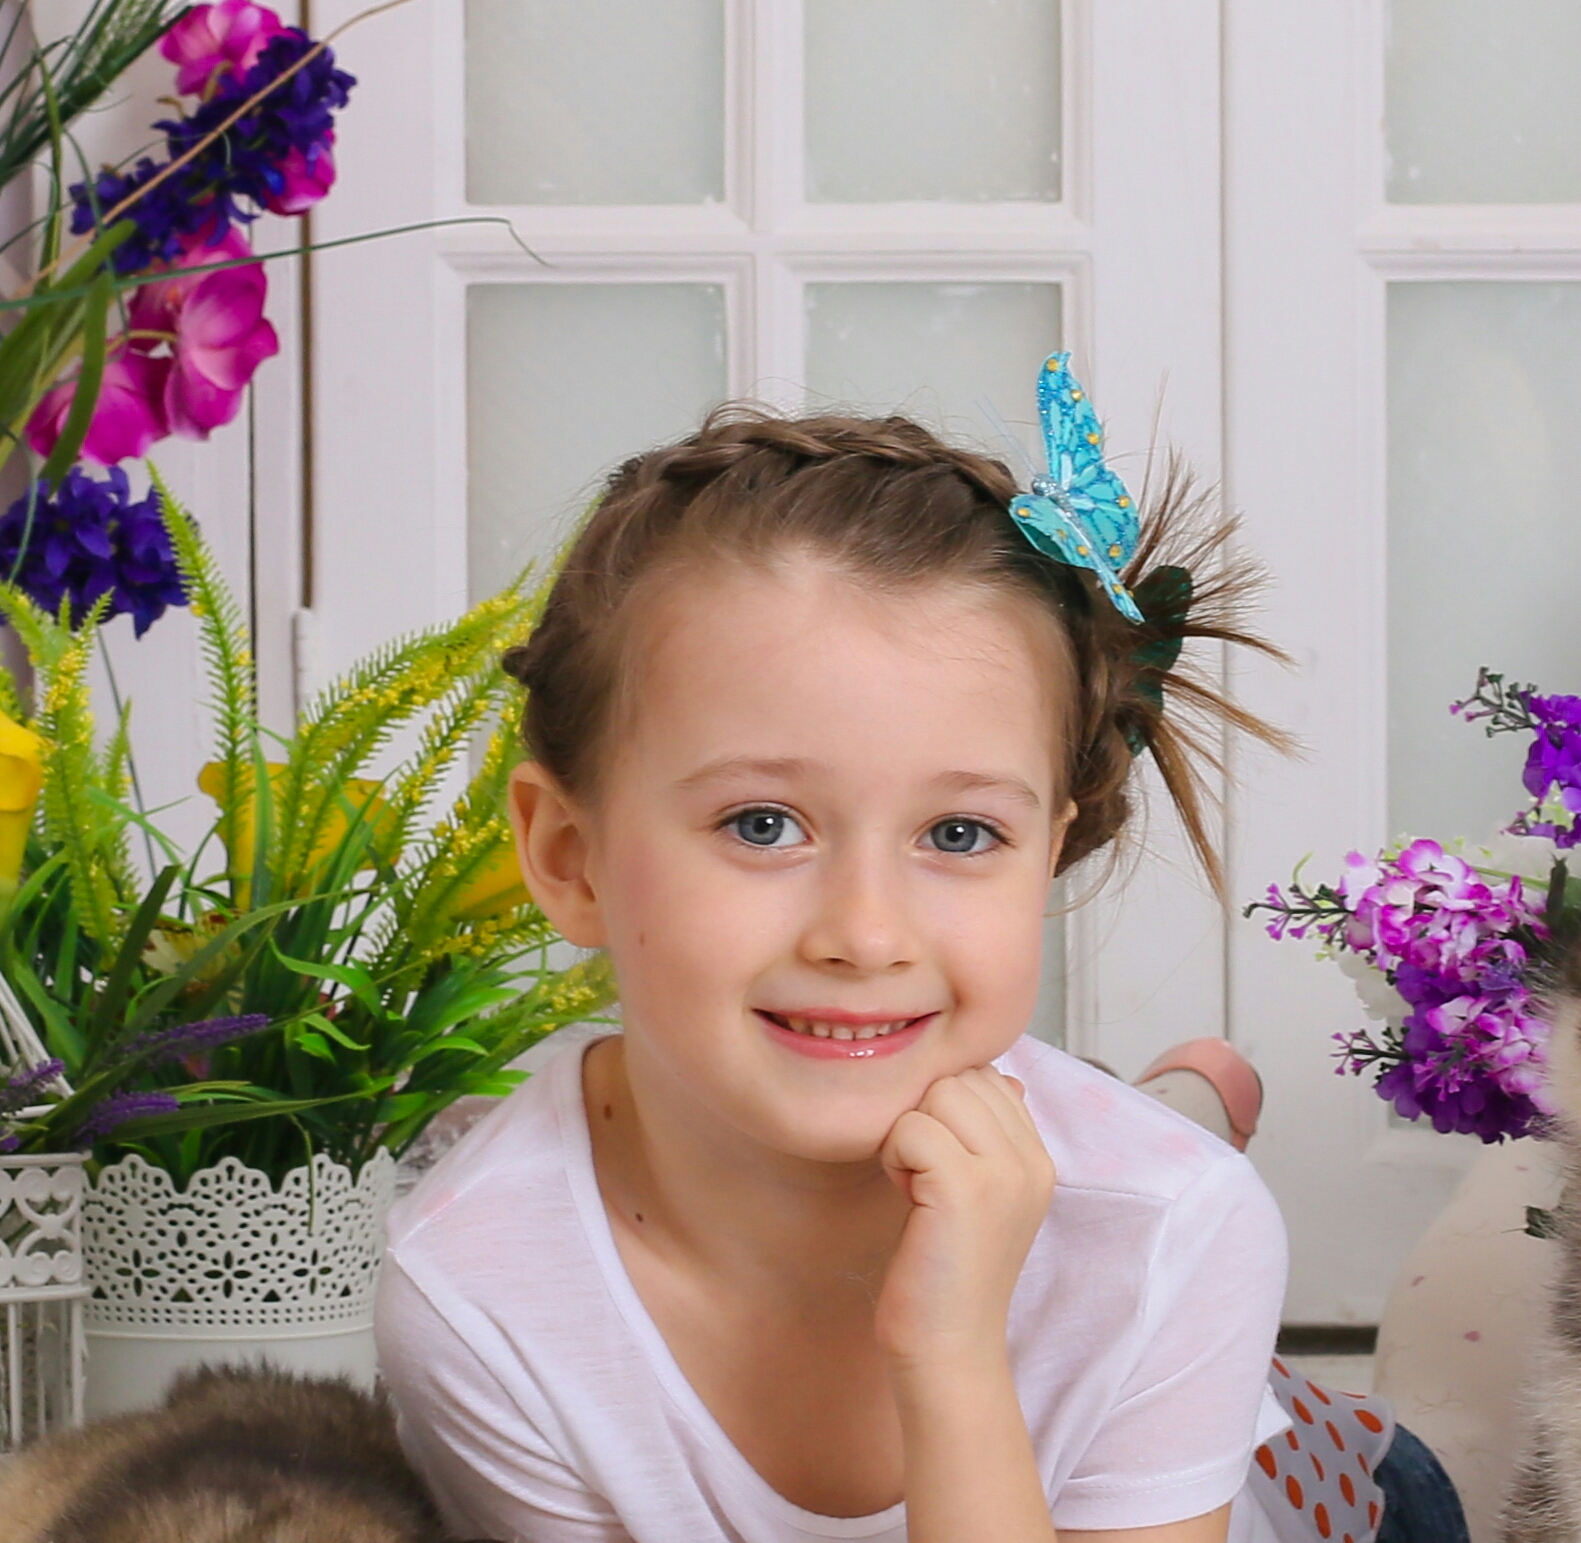 Александра Климова - аккредитованная модель для участия в подиумных показах на Междунродной Детской Неделе моды